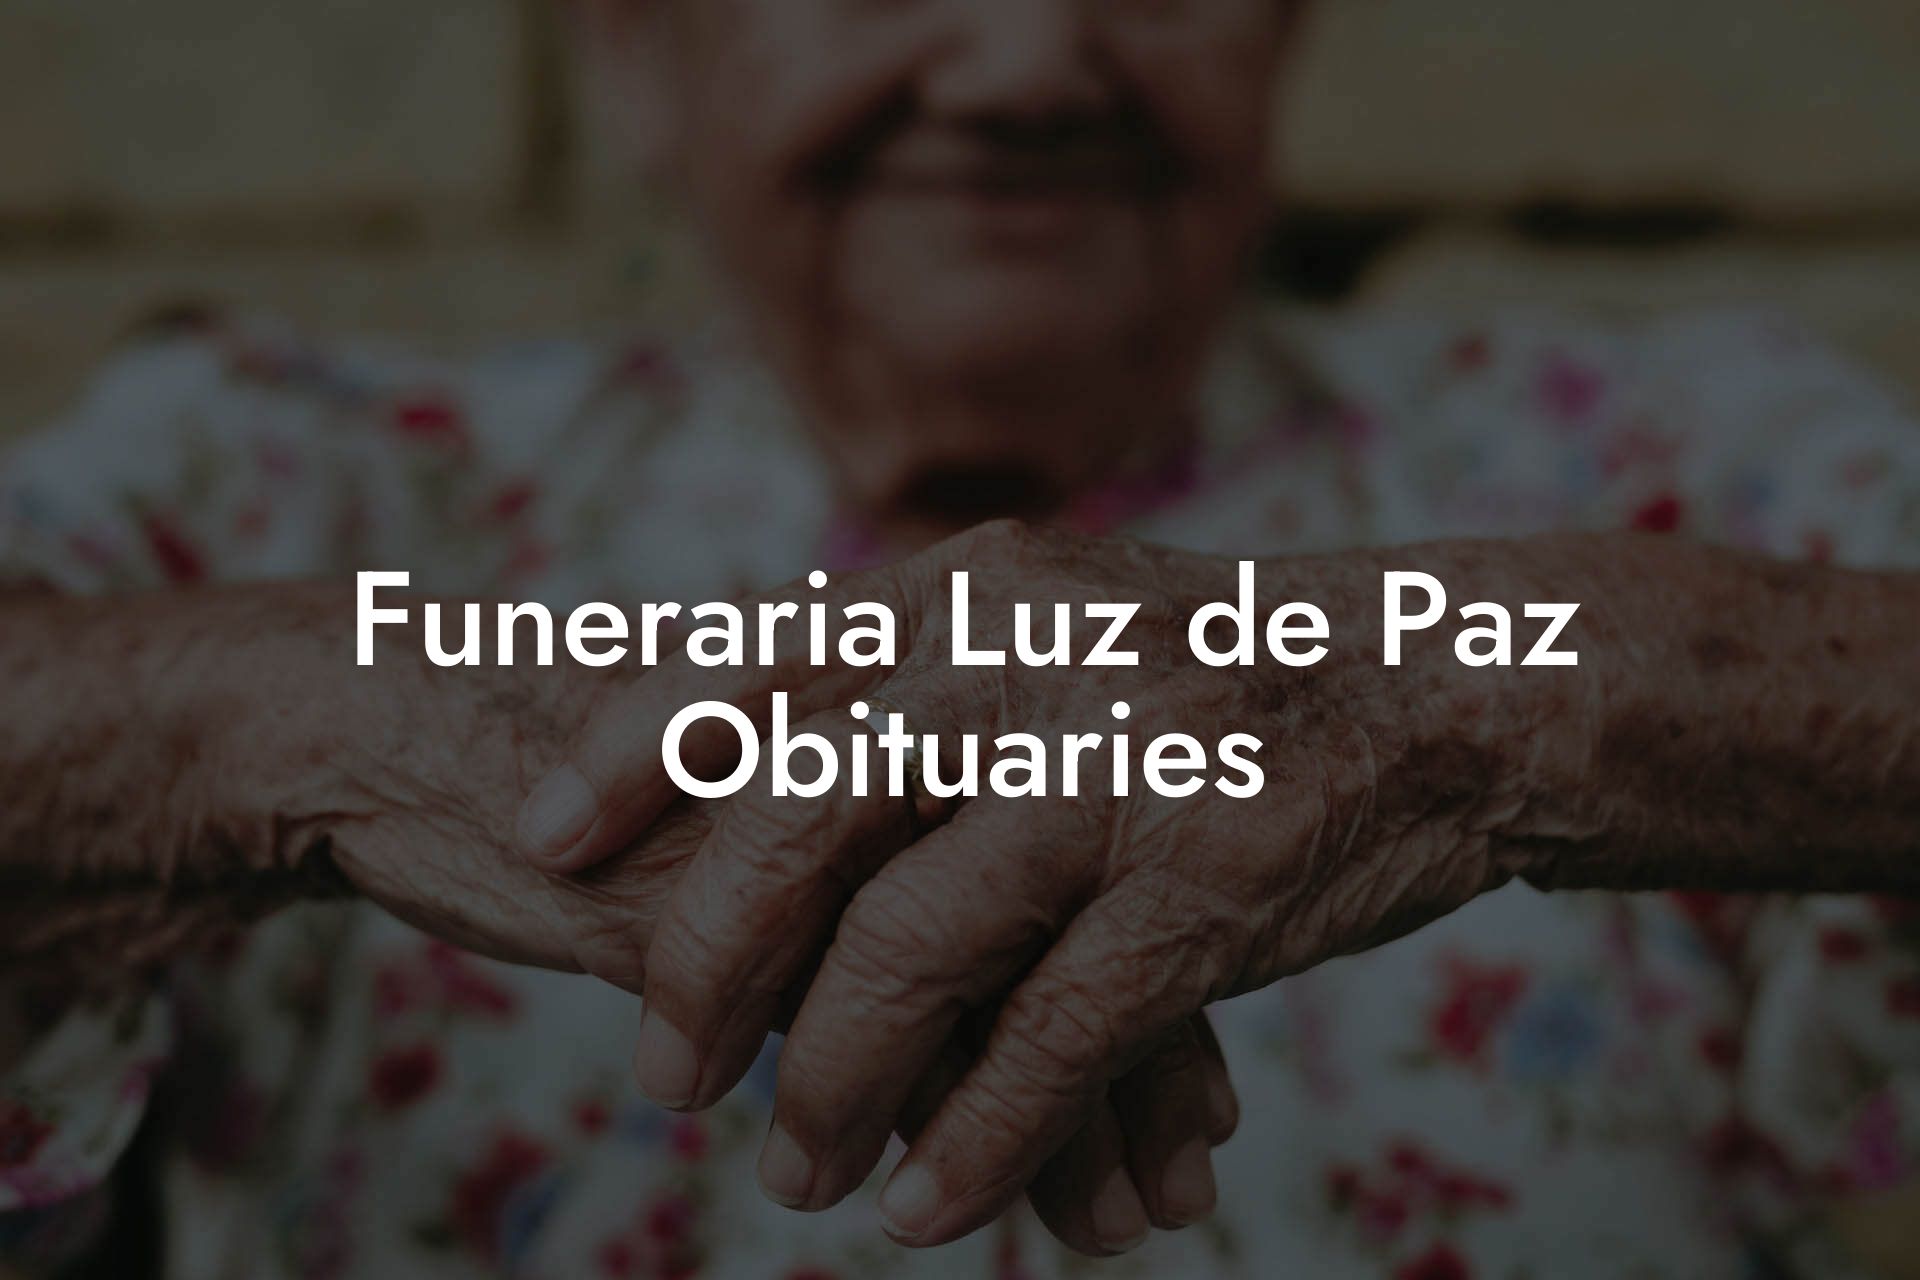 Funeraria Luz de Paz Obituaries